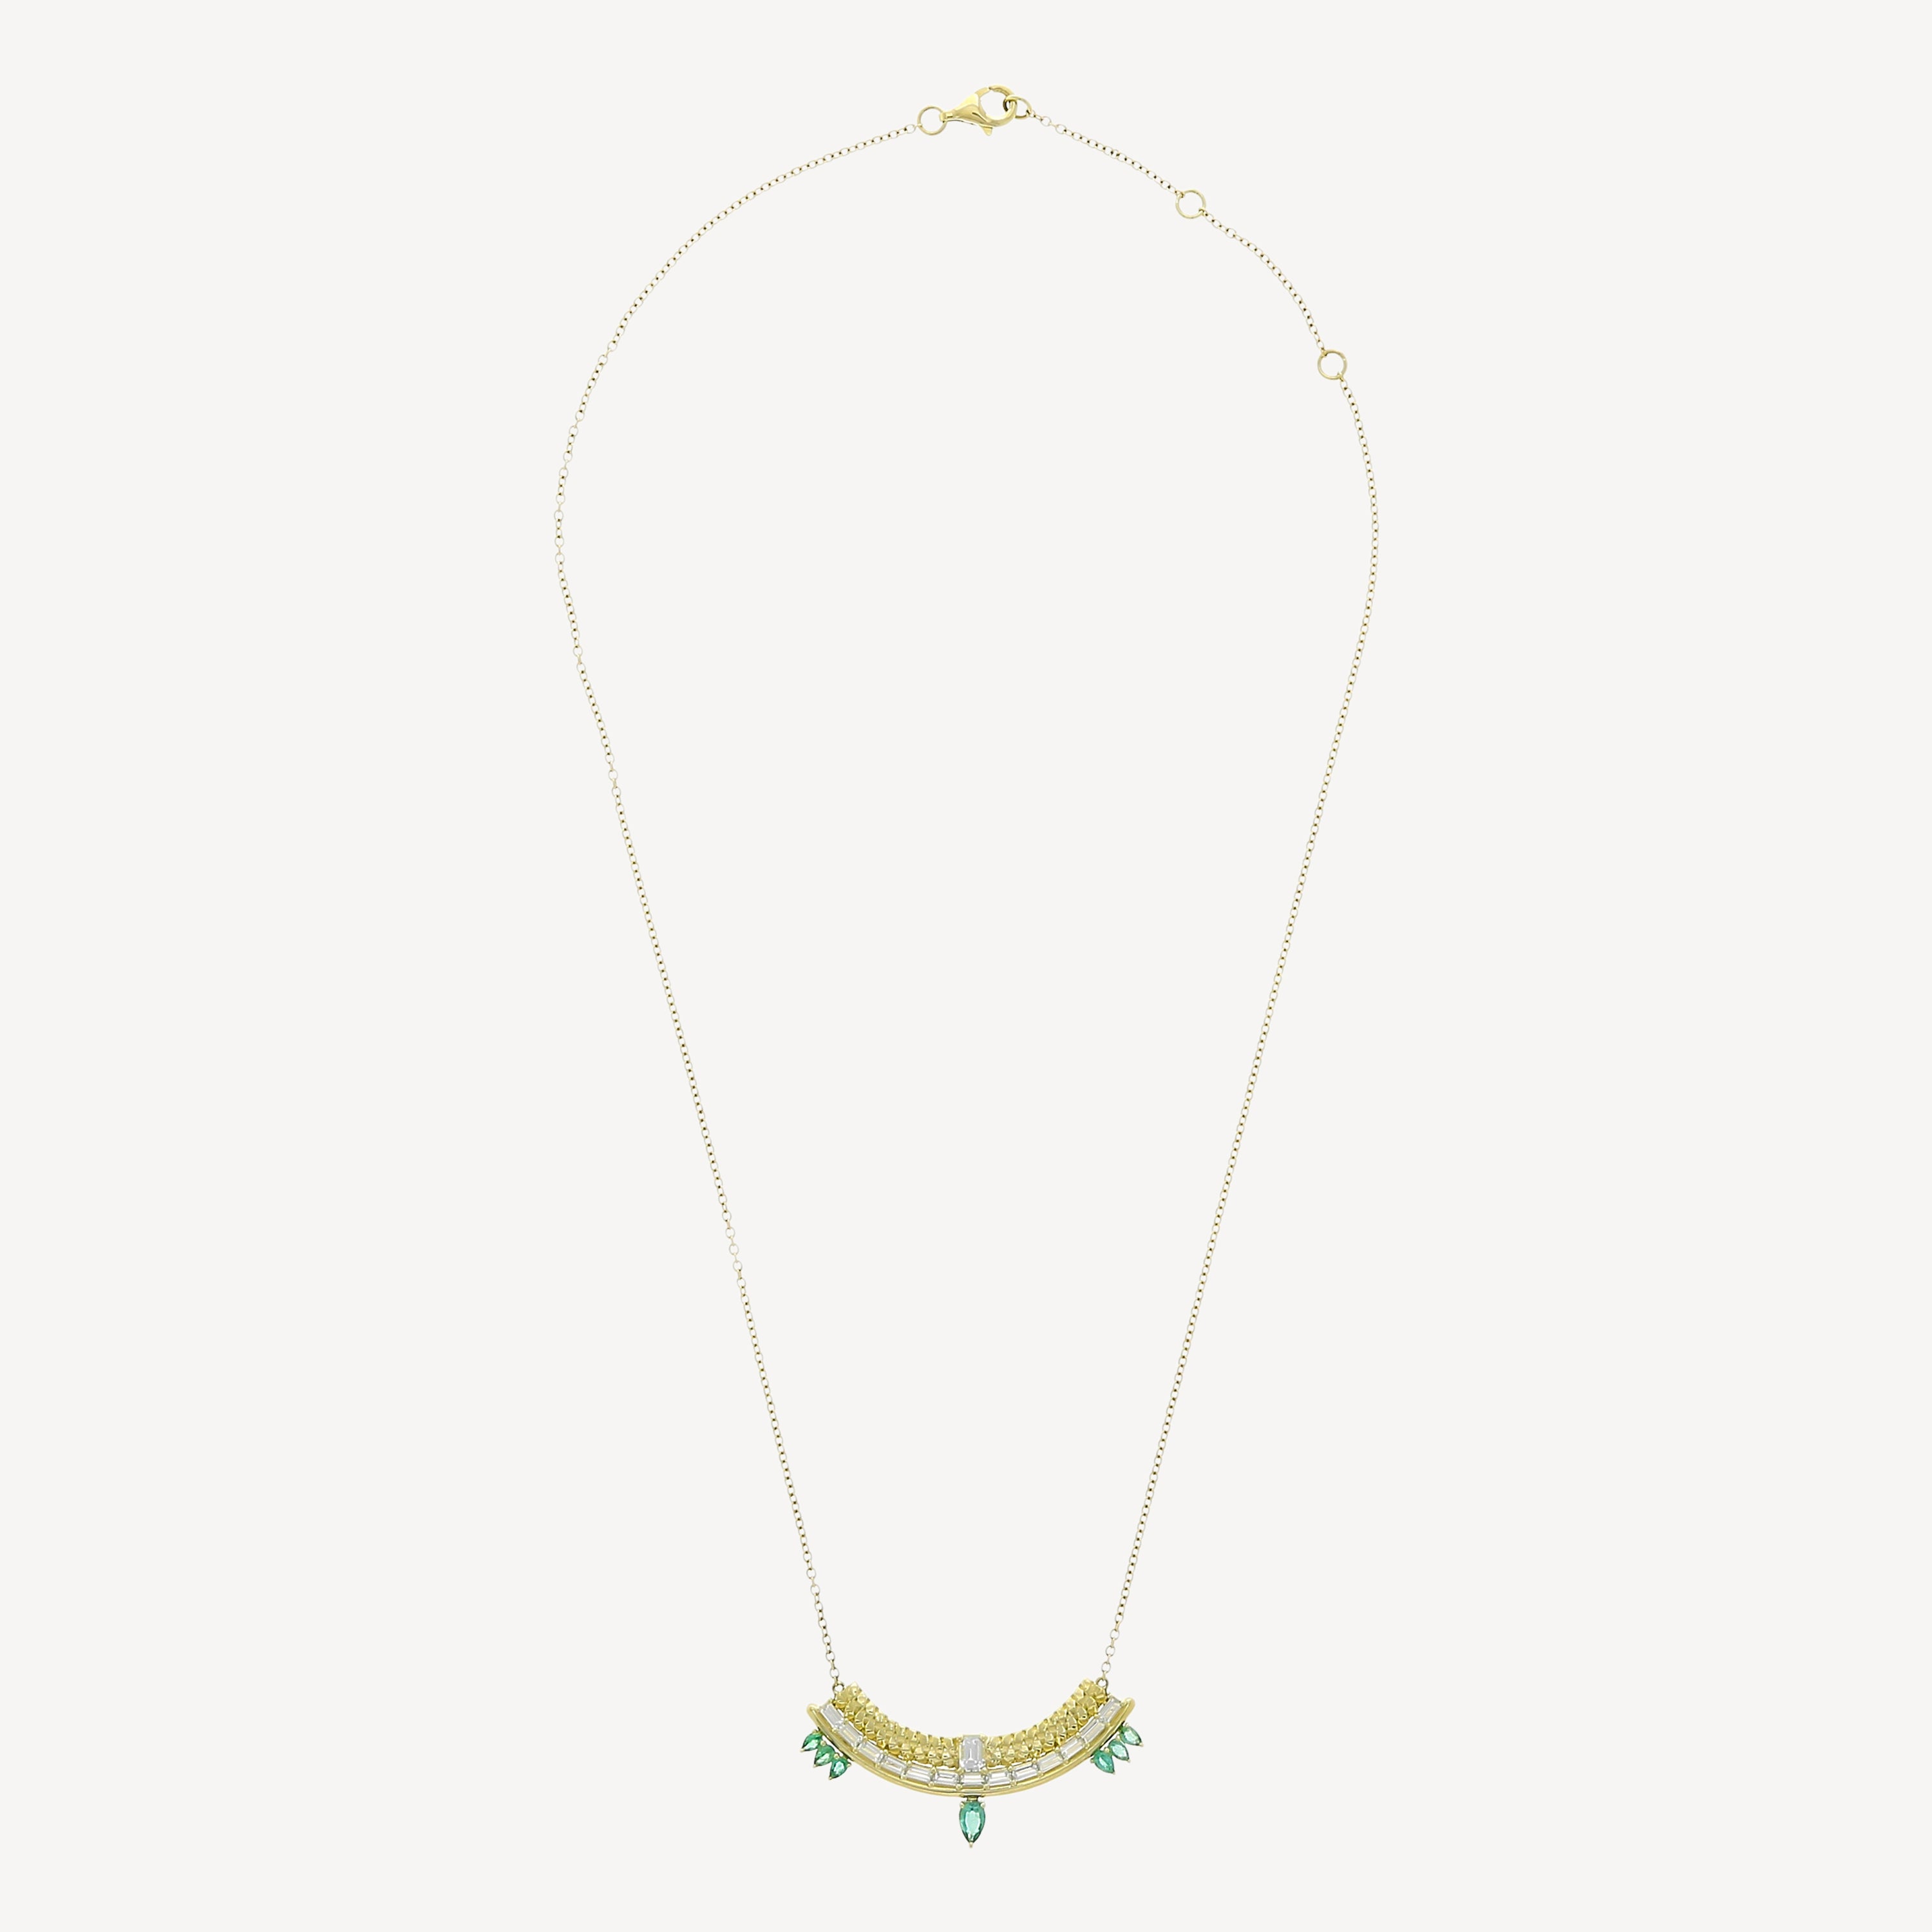 Stapelartige Halskette aus weißem Saphir und Smaragden